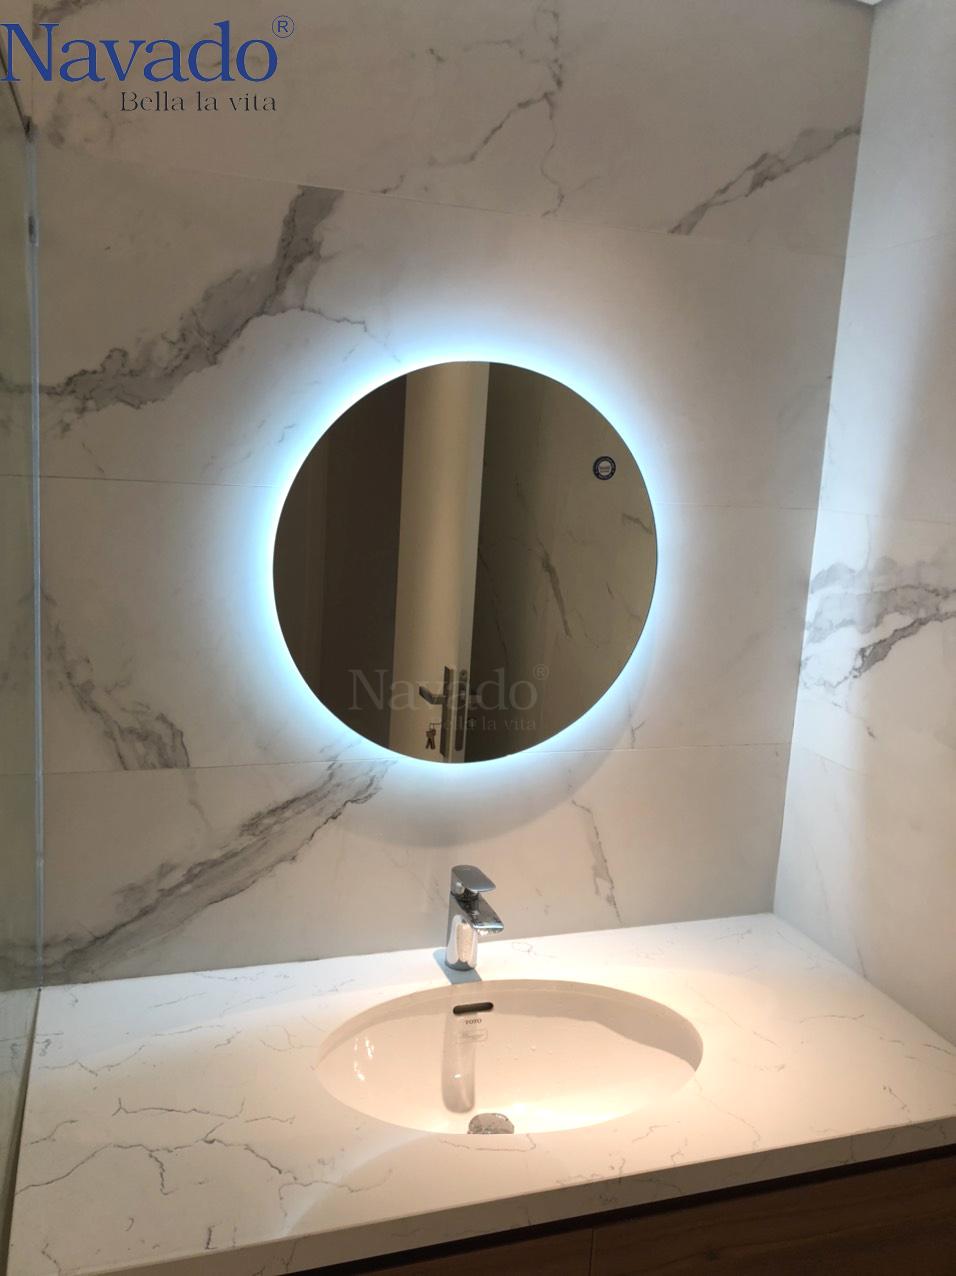 Không gian phòng tắm trở nên rực rỡ hơn với gương phòng tắm tròn hắt sáng. Với viễn cảnh ban đêm như một thiên đường ánh sáng, gương tròn này giúp bạn trang trí phòng tắm tinh tế hơn, tạo ra một không gian mới mẻ đầy sáng tạo.